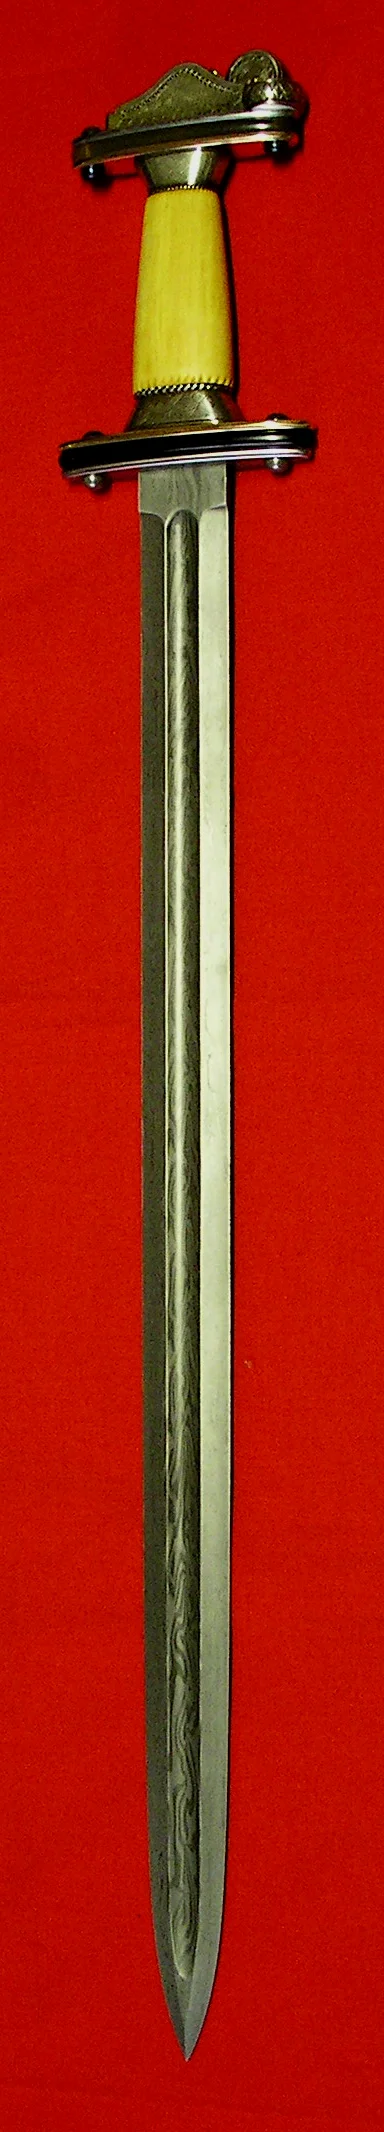 Spatha，之后欧洲各种长剑的祖先。